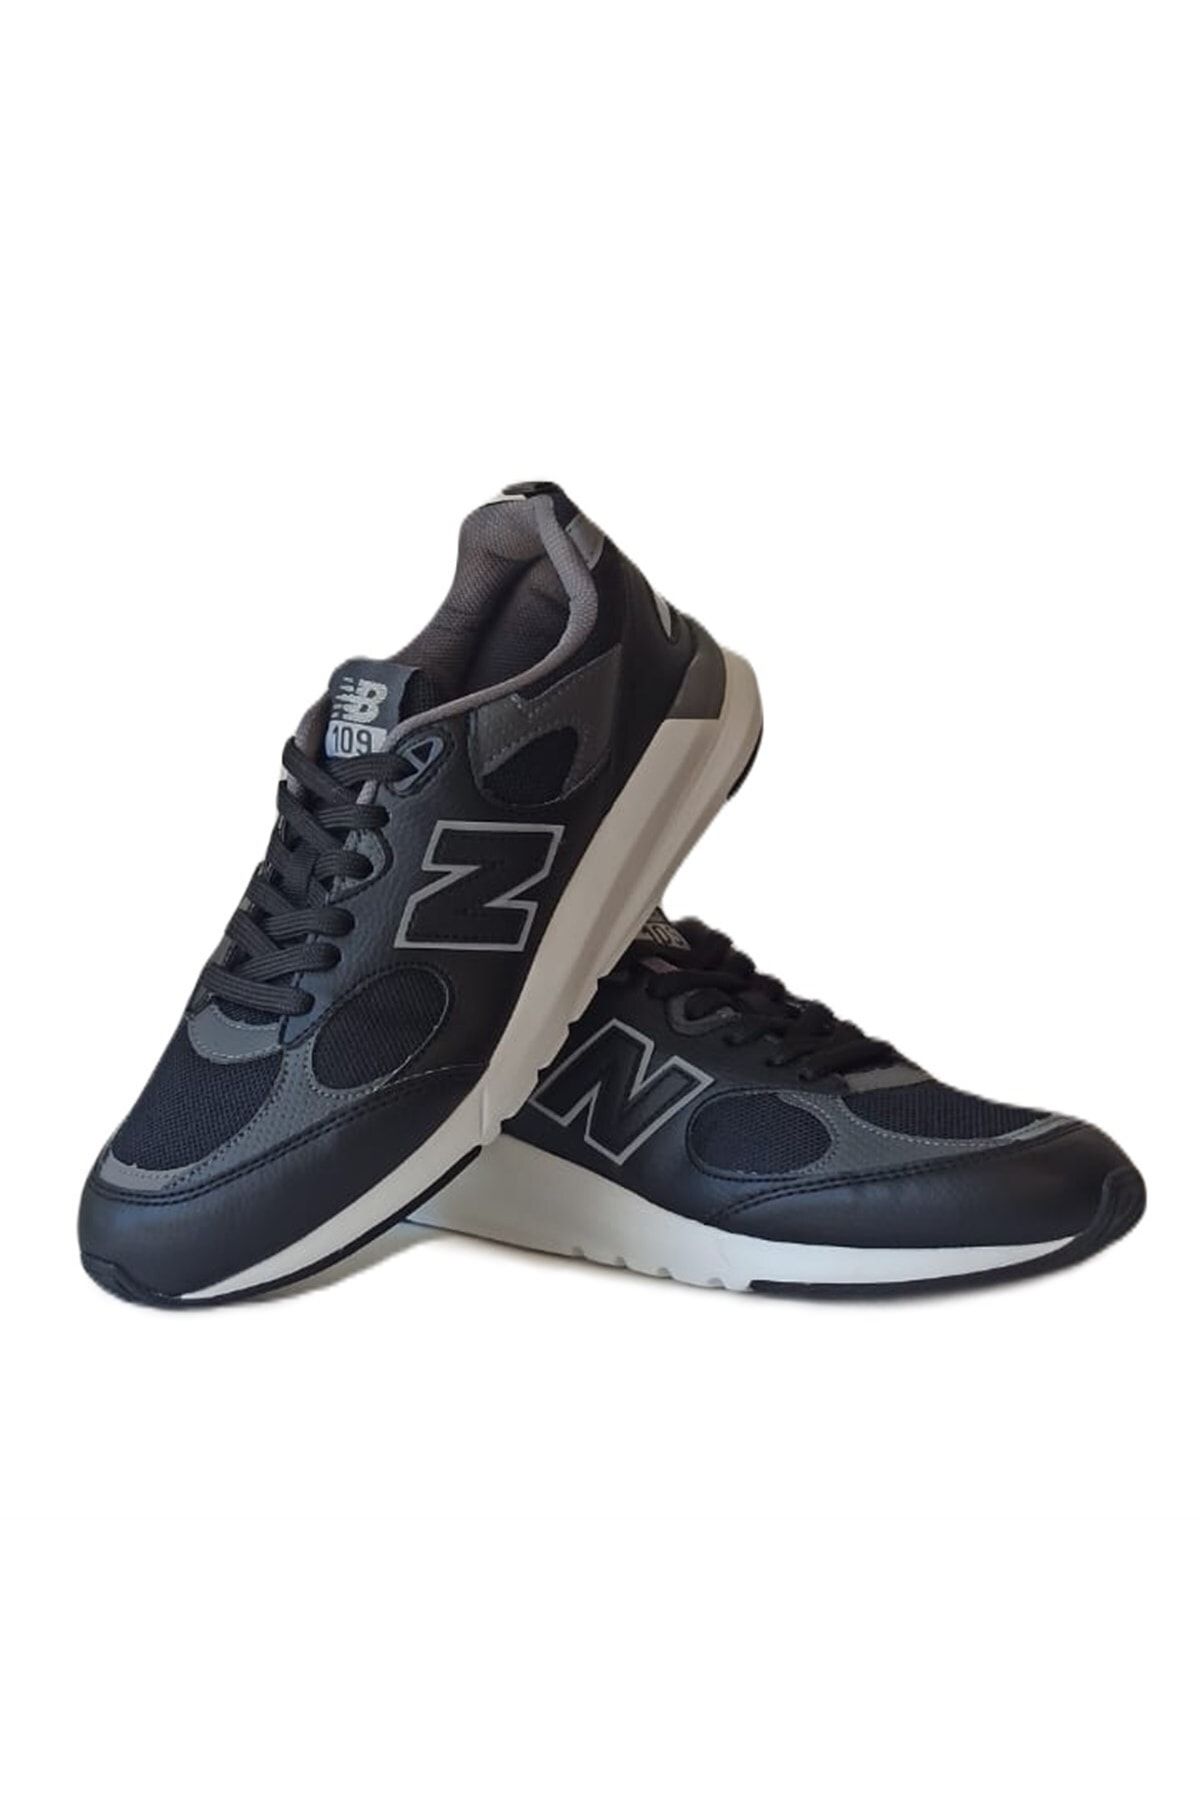 New Balance 109 Siyah Erkek Sneaker Spor Ayakkabı Ms109bgl V3